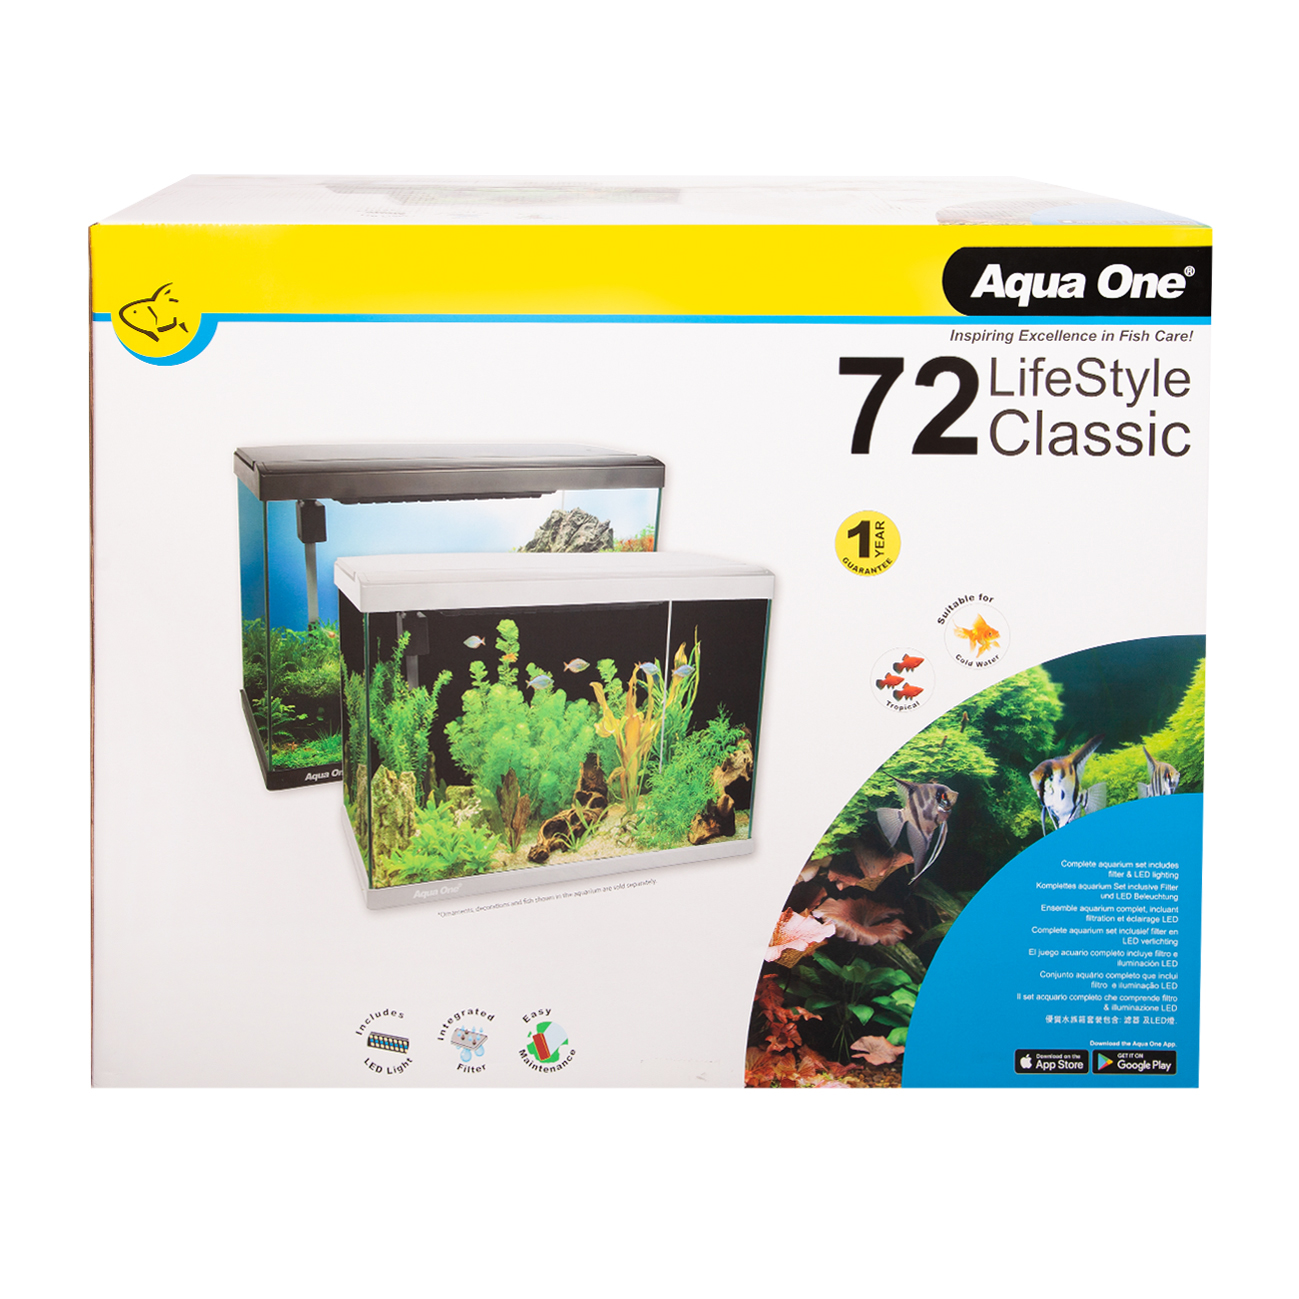 Aqua One LifeStyle Classic Complete Glass Aquarium